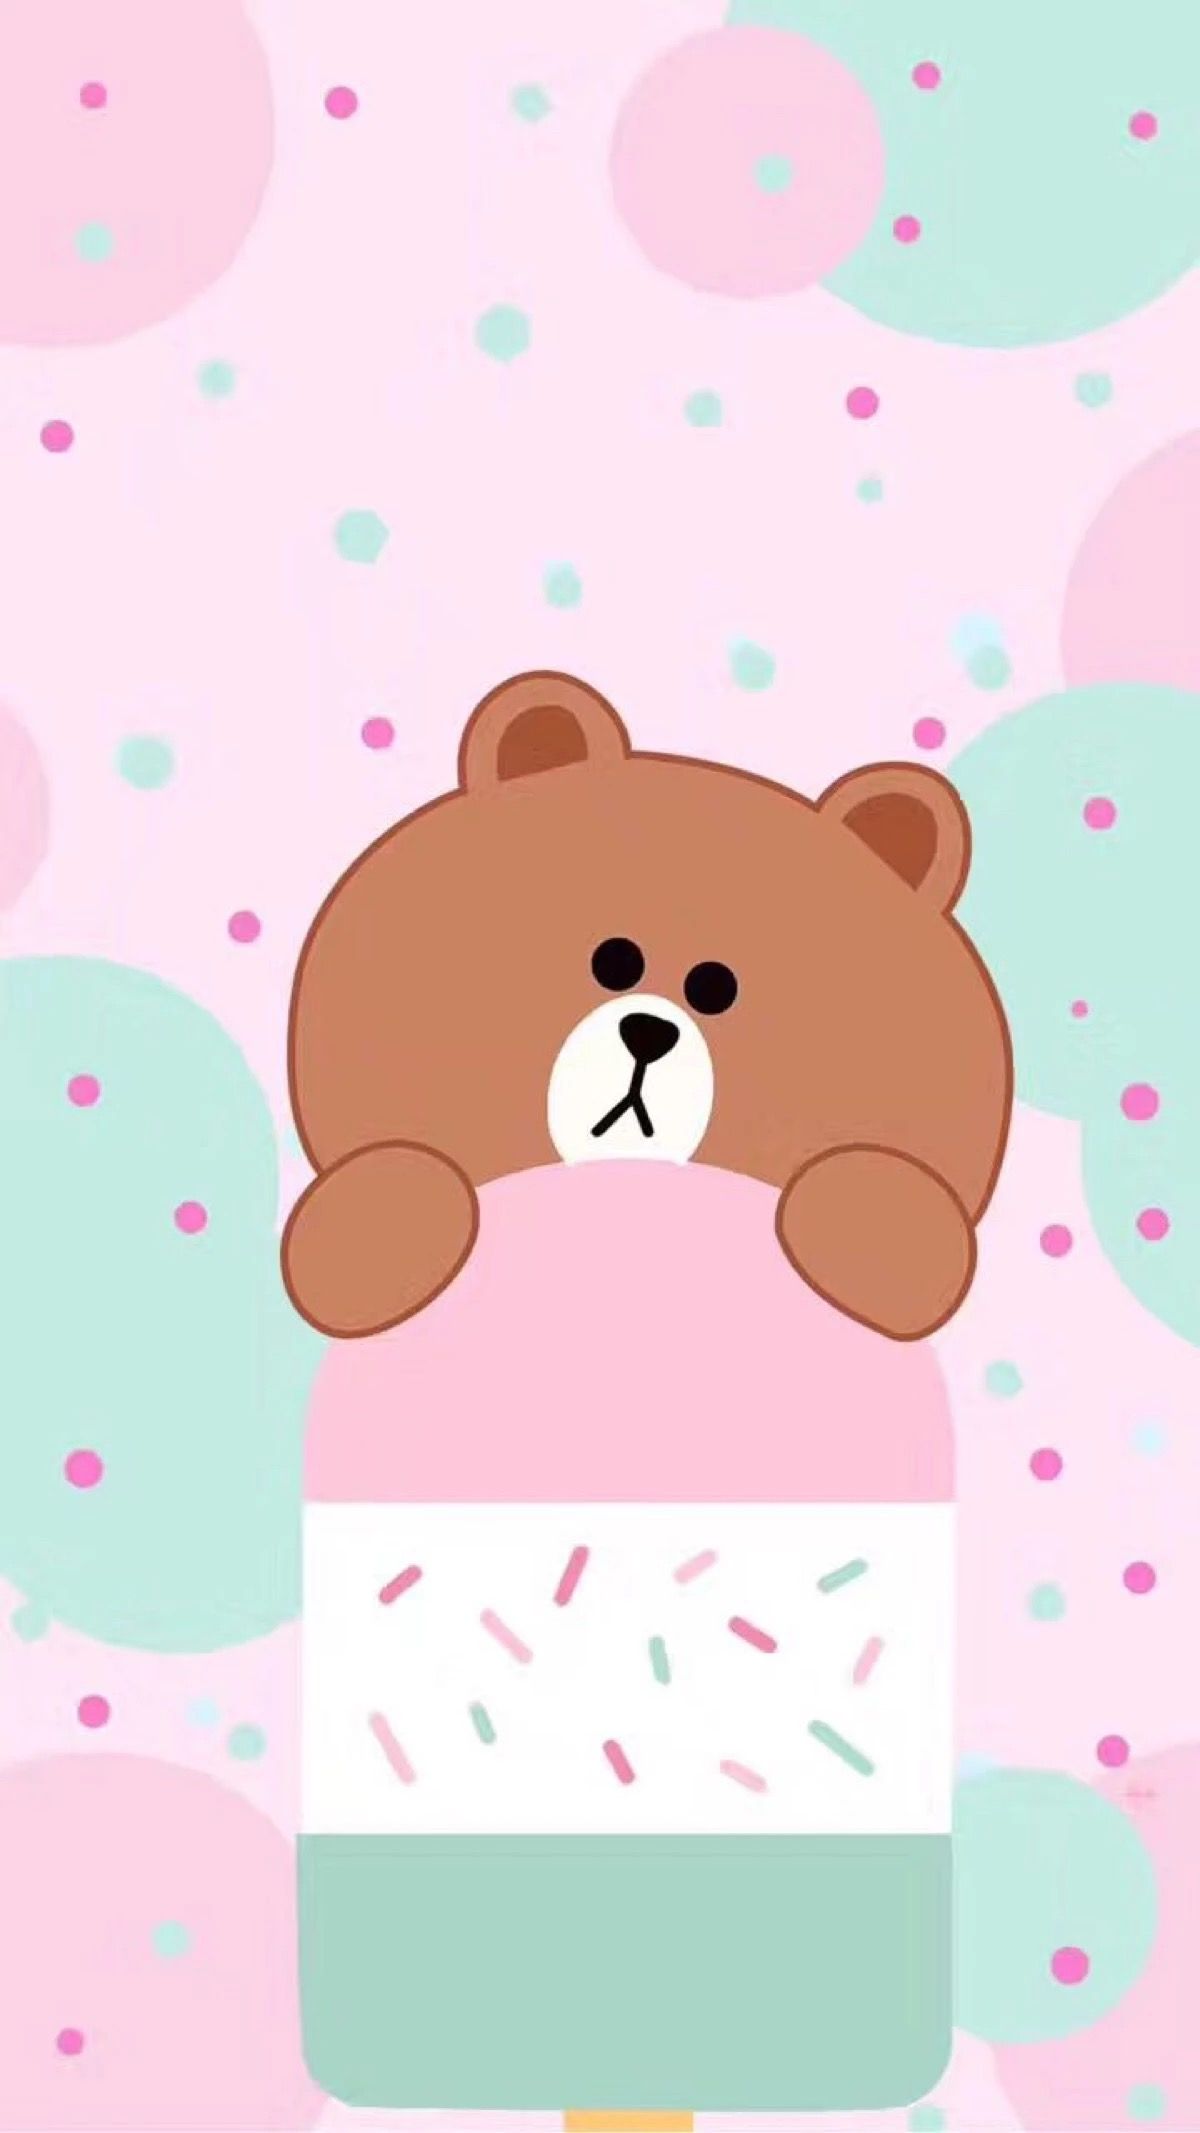 wallpaper pink lucu,cartoon,pink,teddy bear,bear,illustration